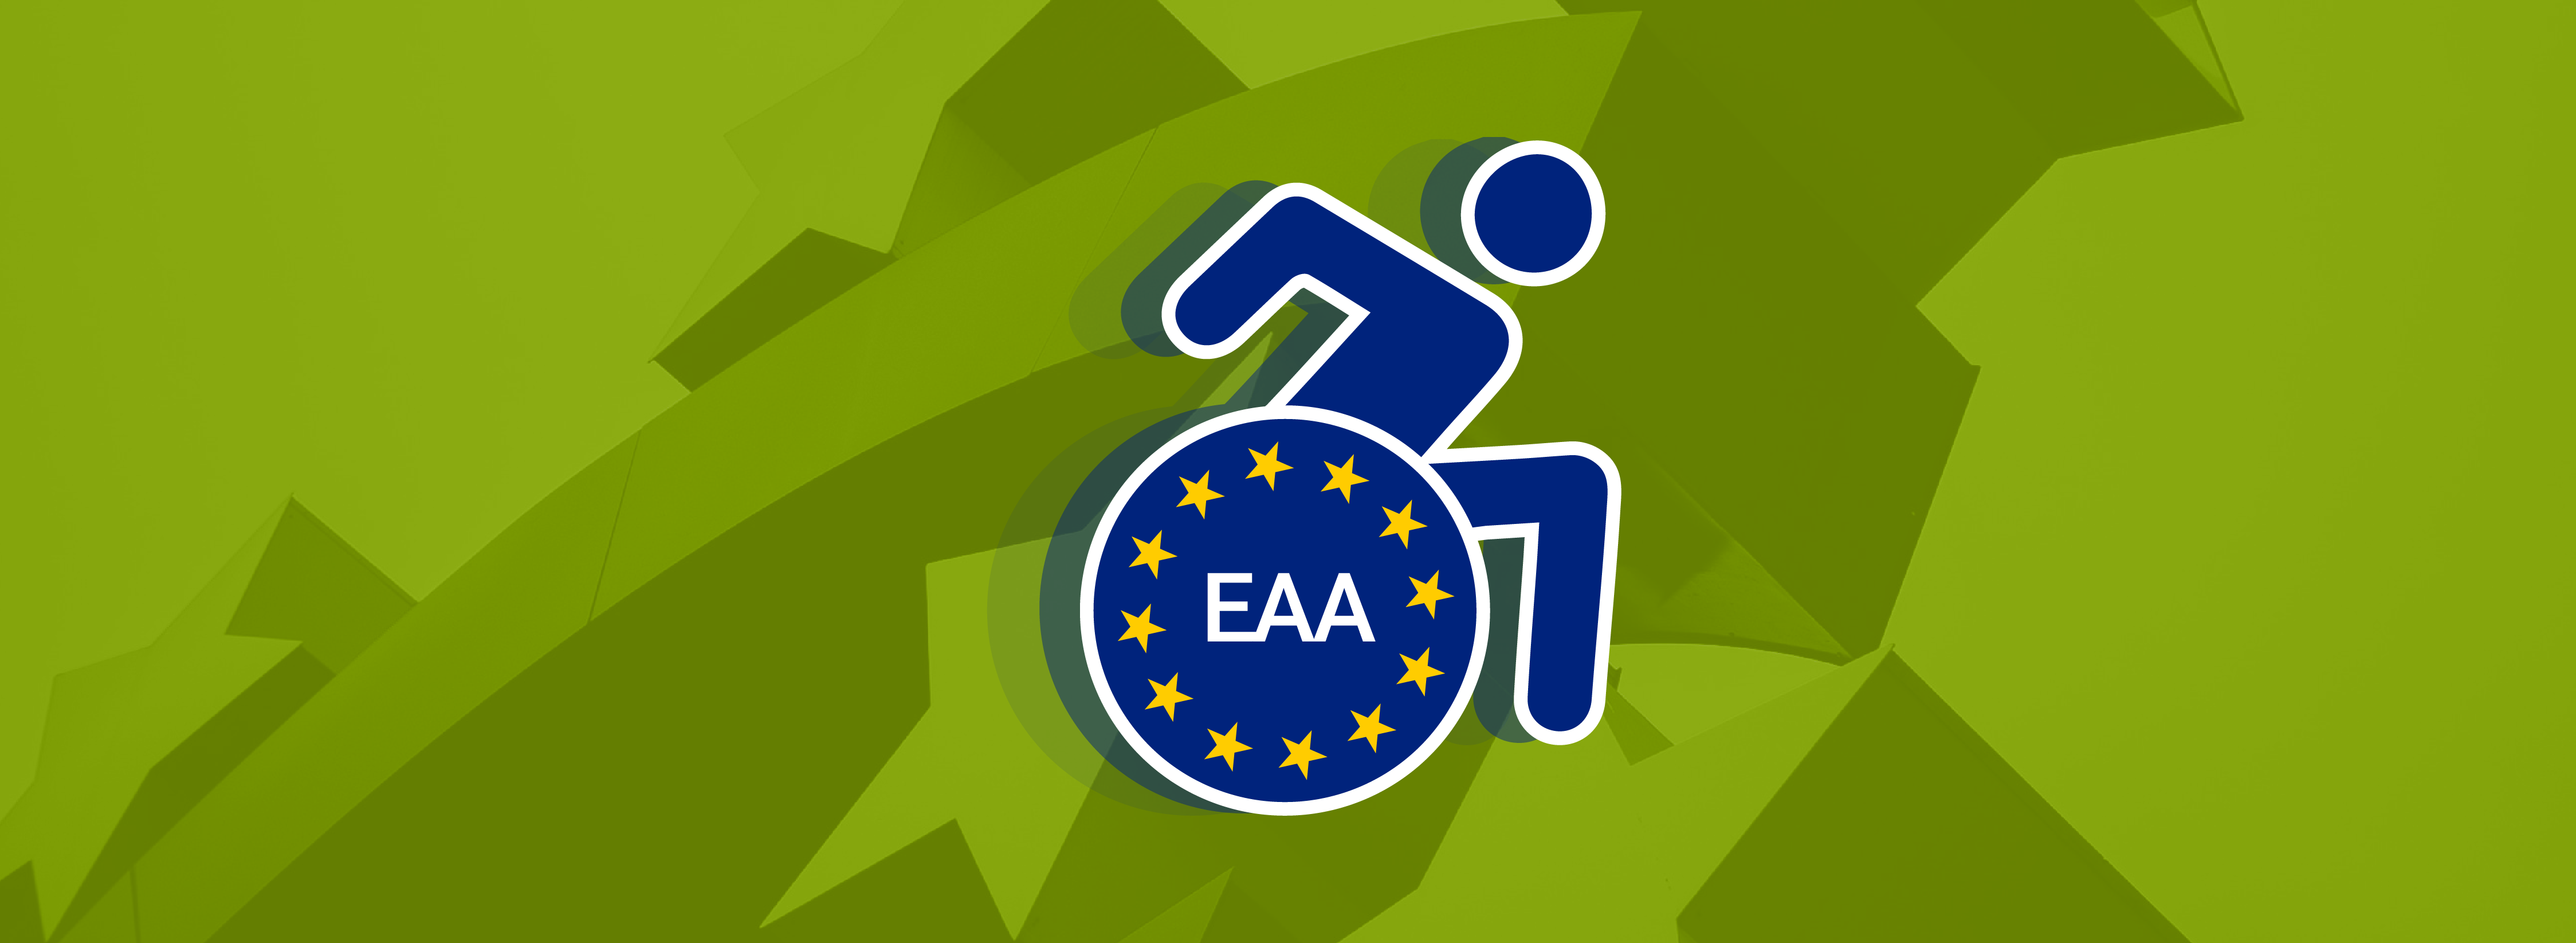 Ein dunkelblaues Rollstuhlsymbol ist in der Mitte der Abbildung vor grünem Hintergrund. Den Reifen des Rollstuhl schmücken 12 Sterne. In der Mitte steht EAA.